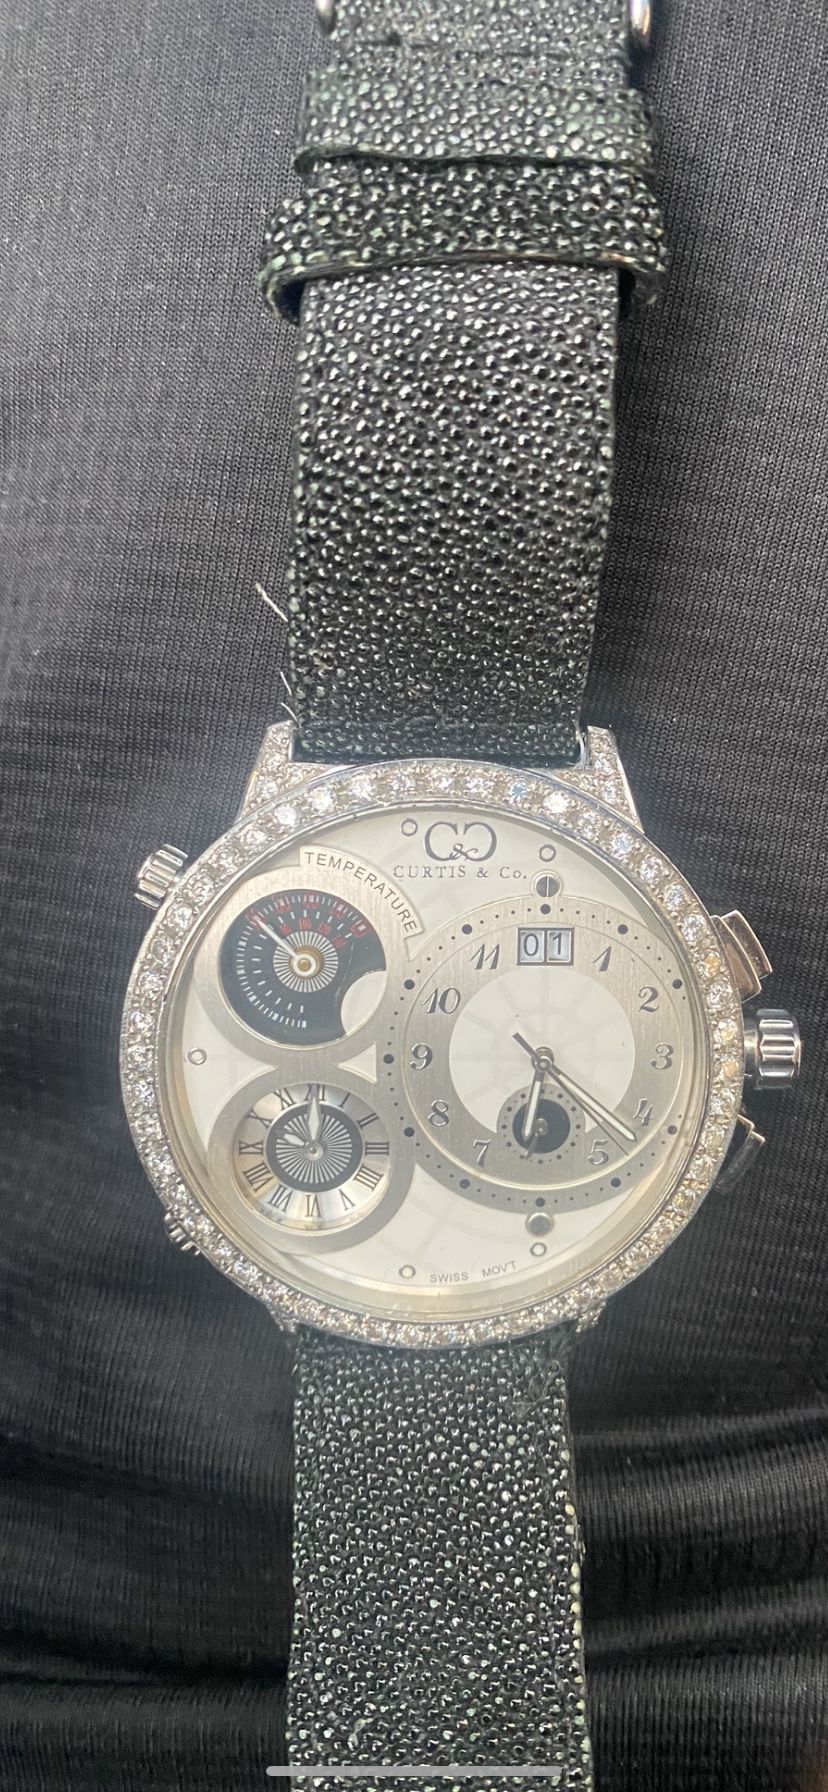 Curtis & Co Diamond Watch